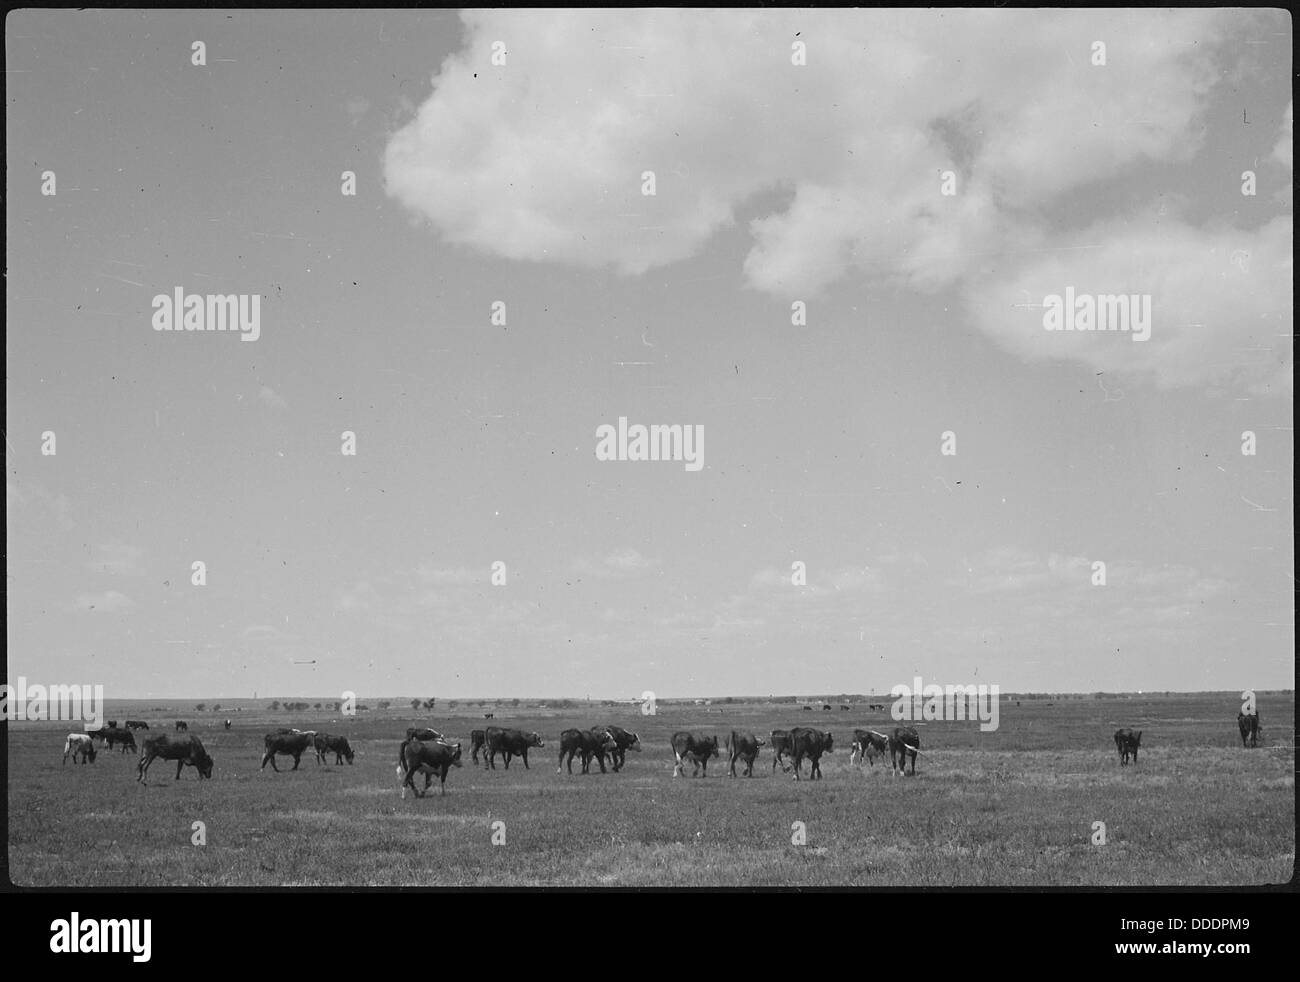 Granada Relocation Center, Amache, Colorado. Cattle on pasture, XY Ranch, project farm. 537191 Stock Photo